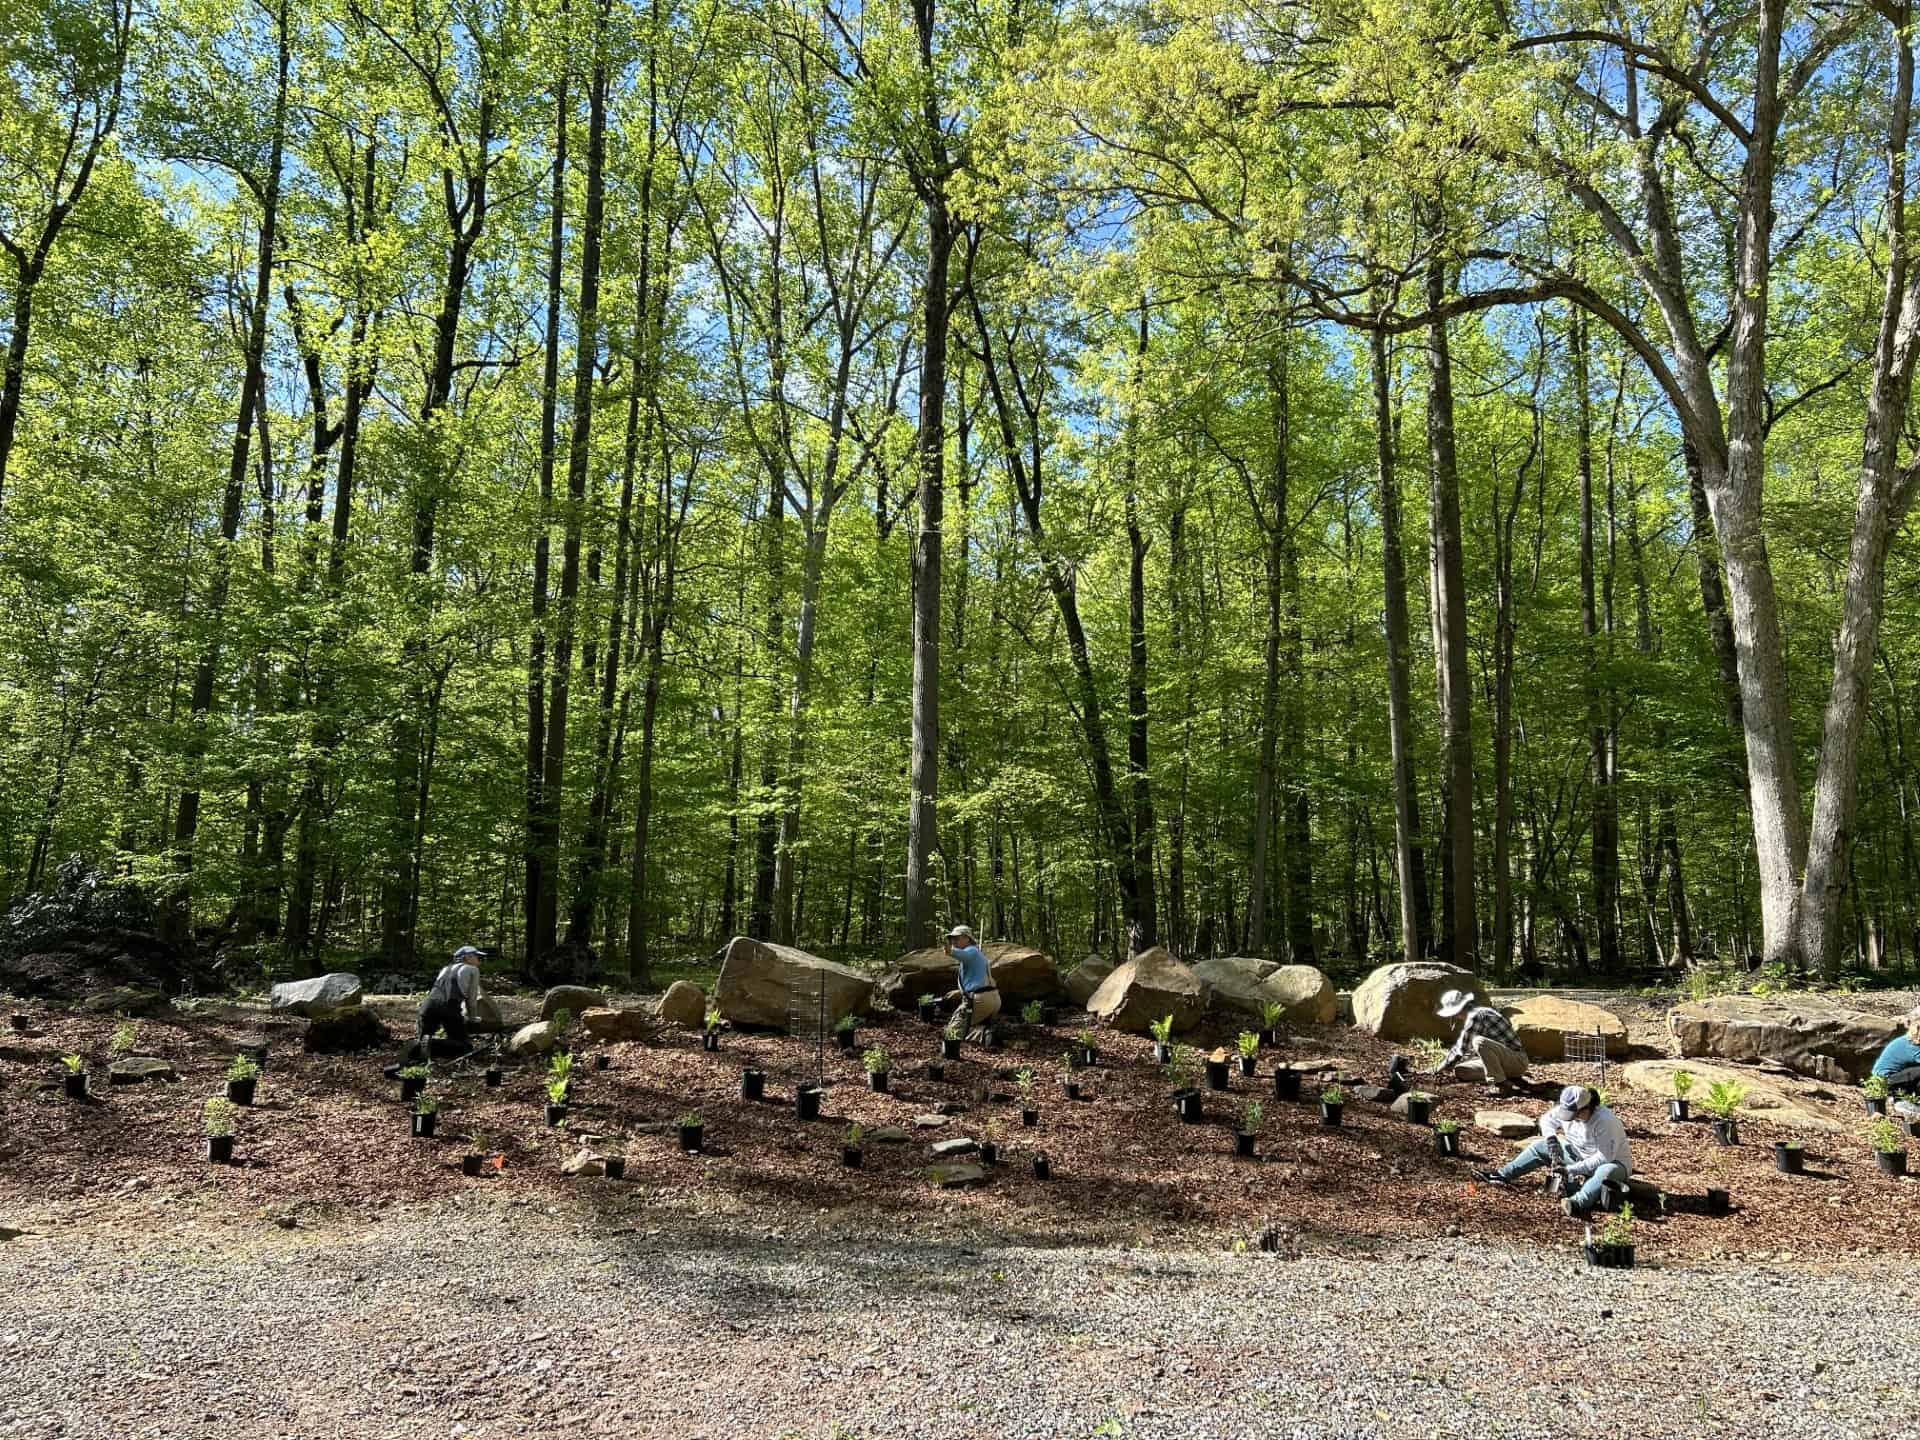 Volunteers planting wildflowers on bank in front of woods